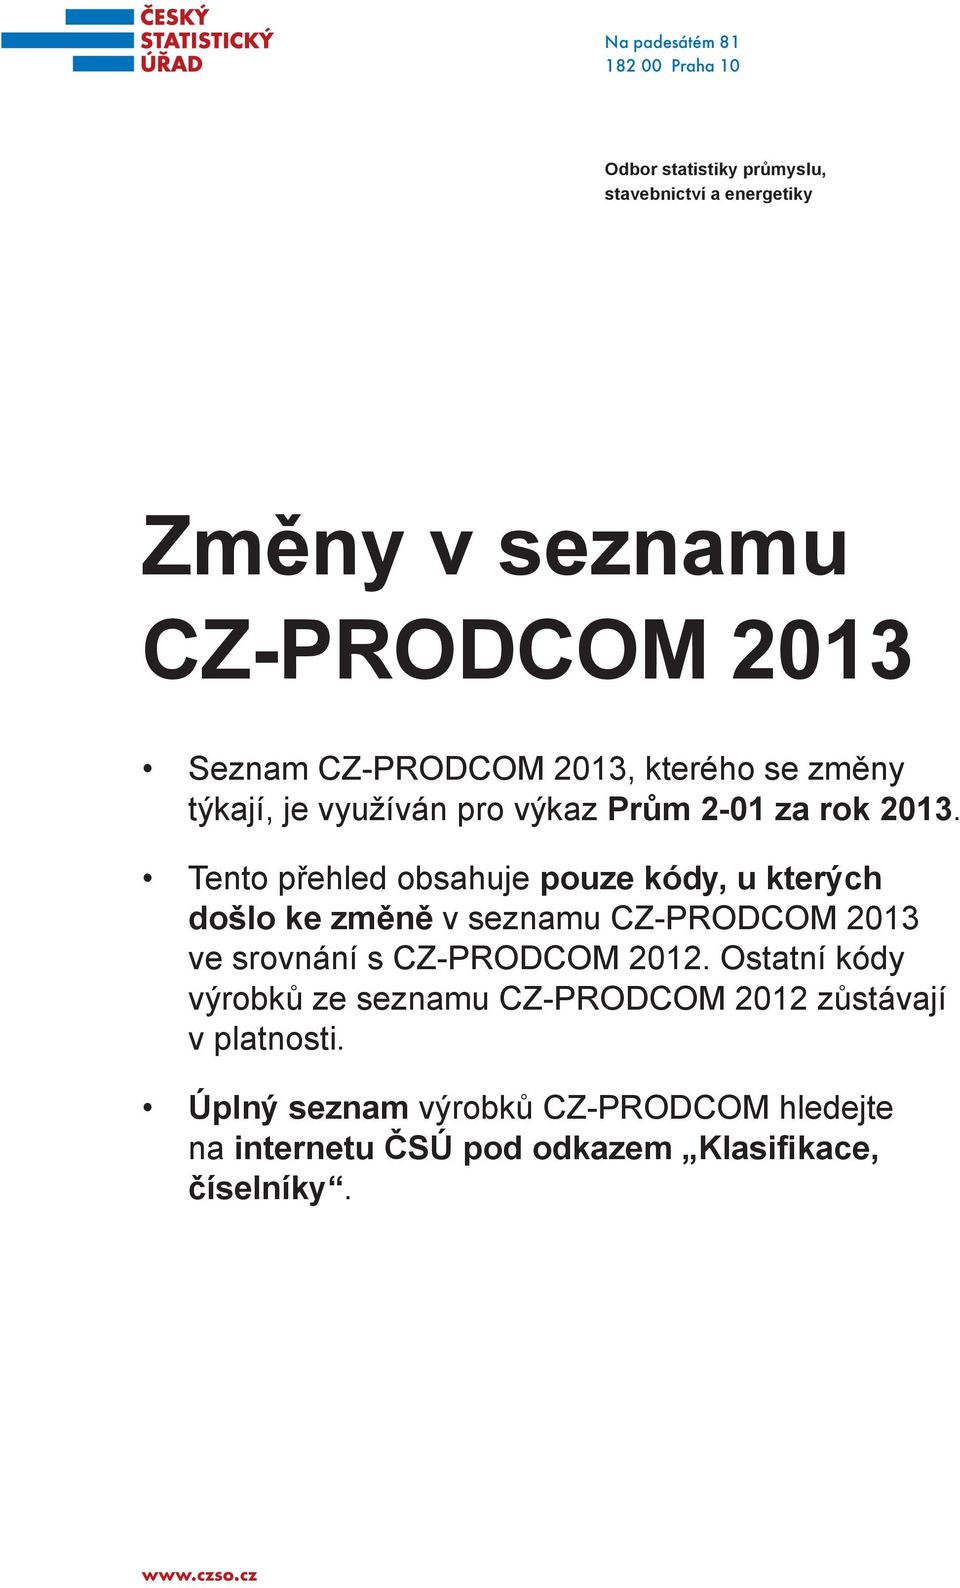 Teno přehled obsahuje pouze kódy, u kerých došlo ke změně v seznamu CZ-PRODCOM 2013 ve srovnání s CZ-PRODCOM 2012.